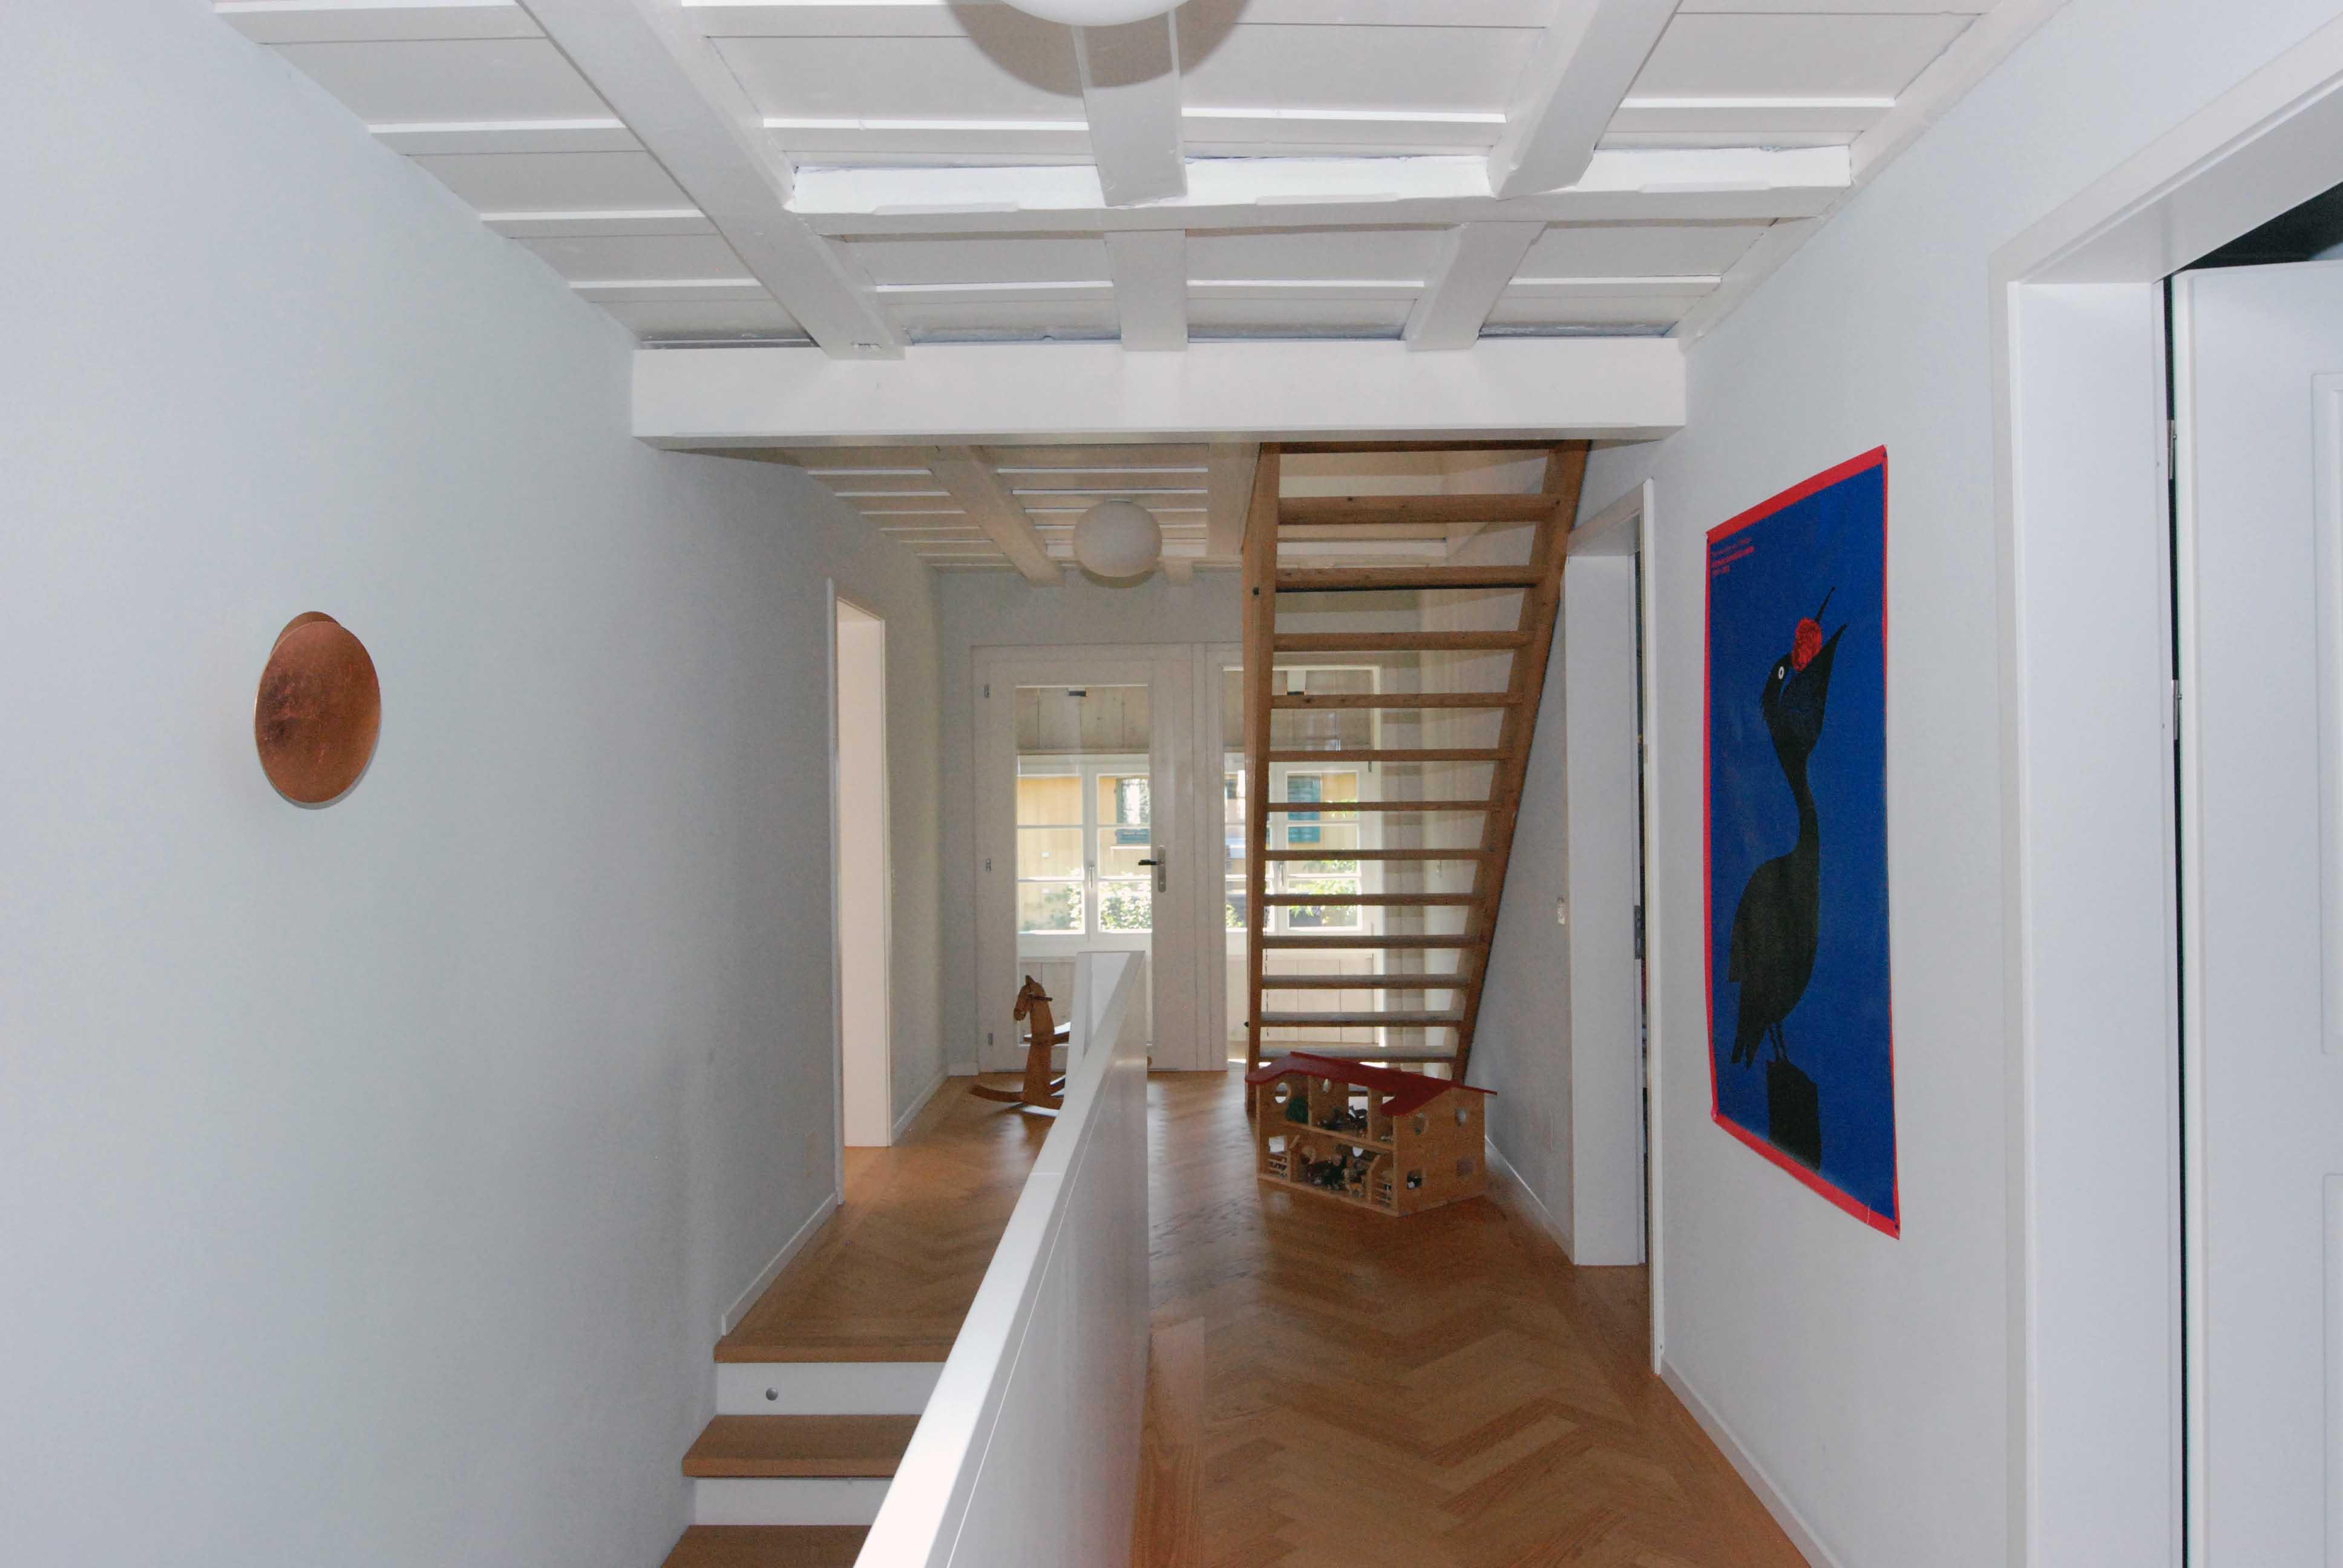 Architektur-Reportage Derendingen Elsässli: Blick auf die zwei Treppen